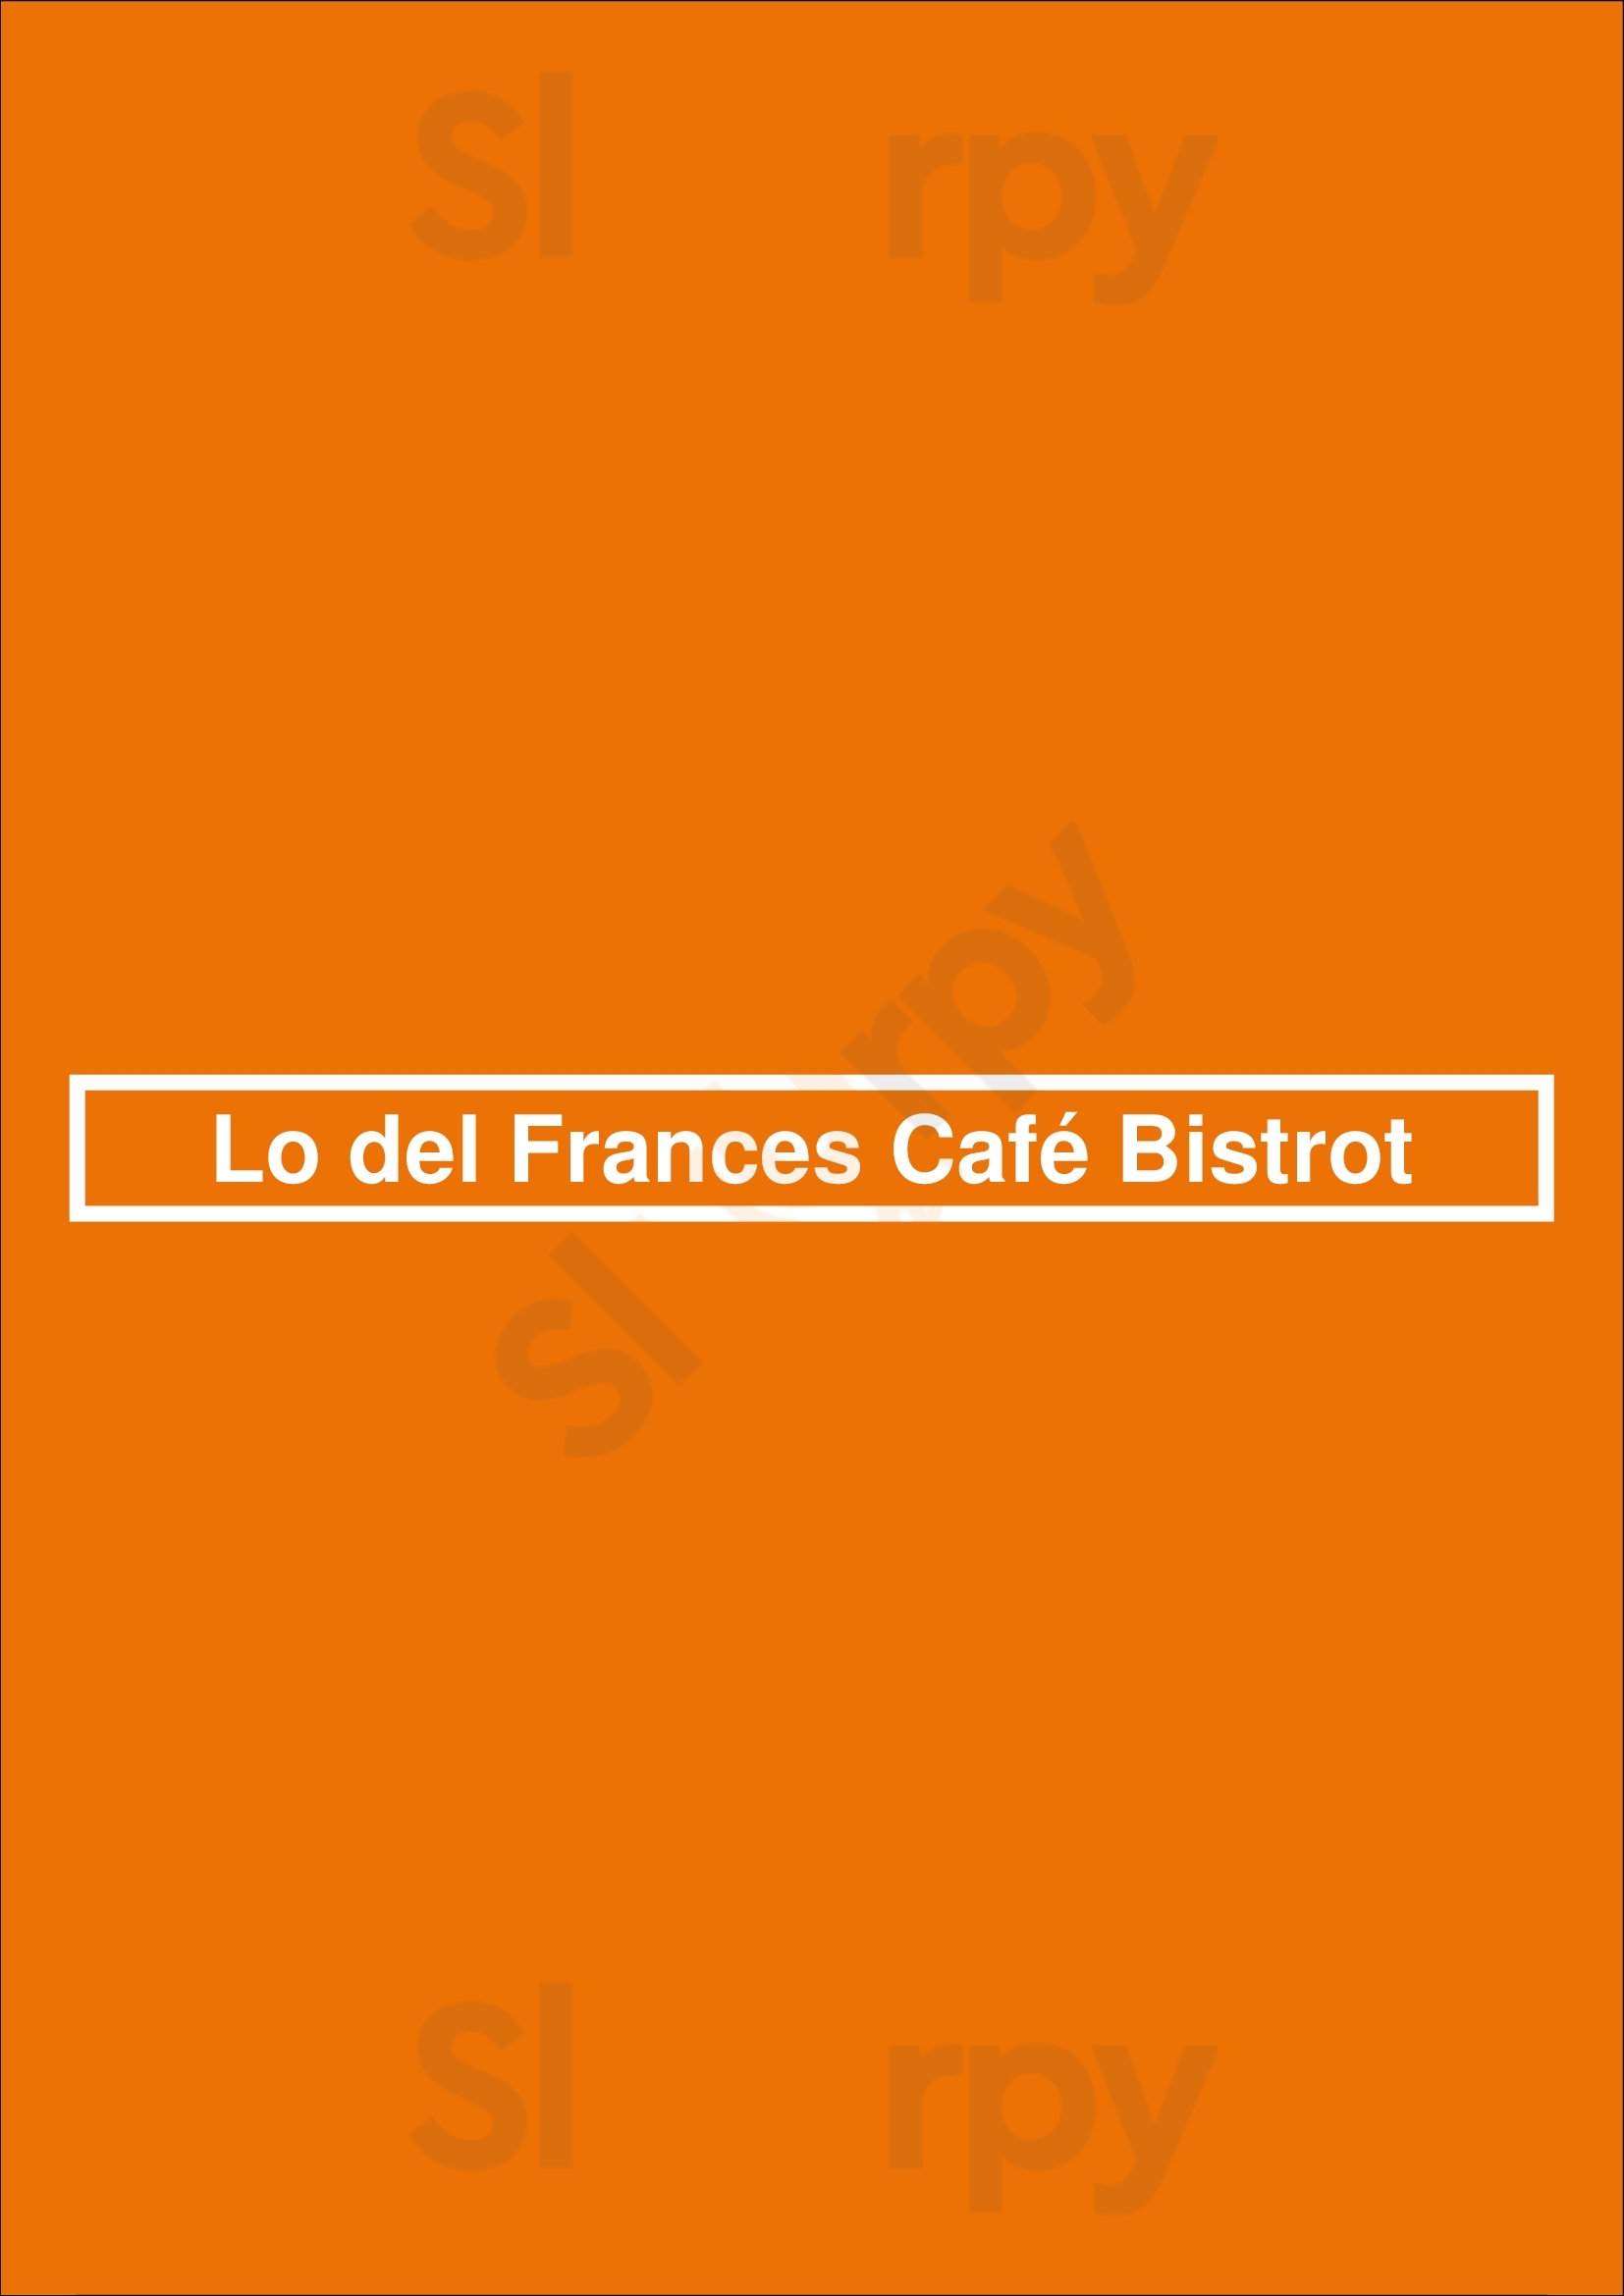 Lo Del Frances Café Bistrot Buenos Aires Menu - 1